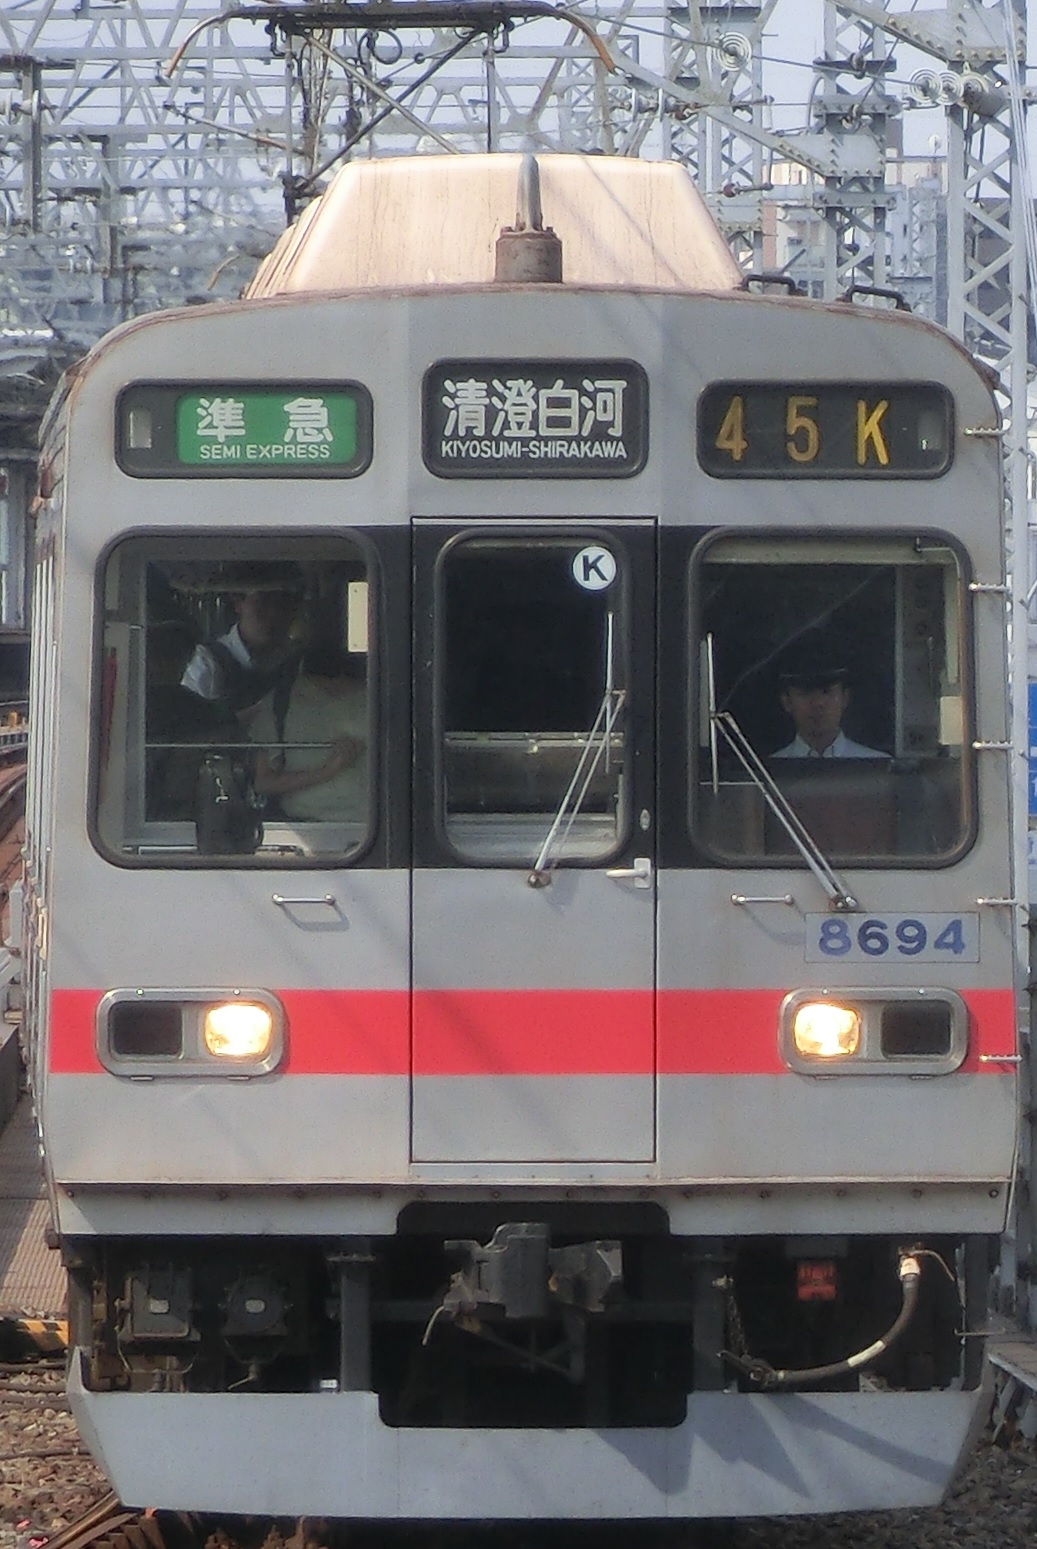 Tk 8694-元.jpg